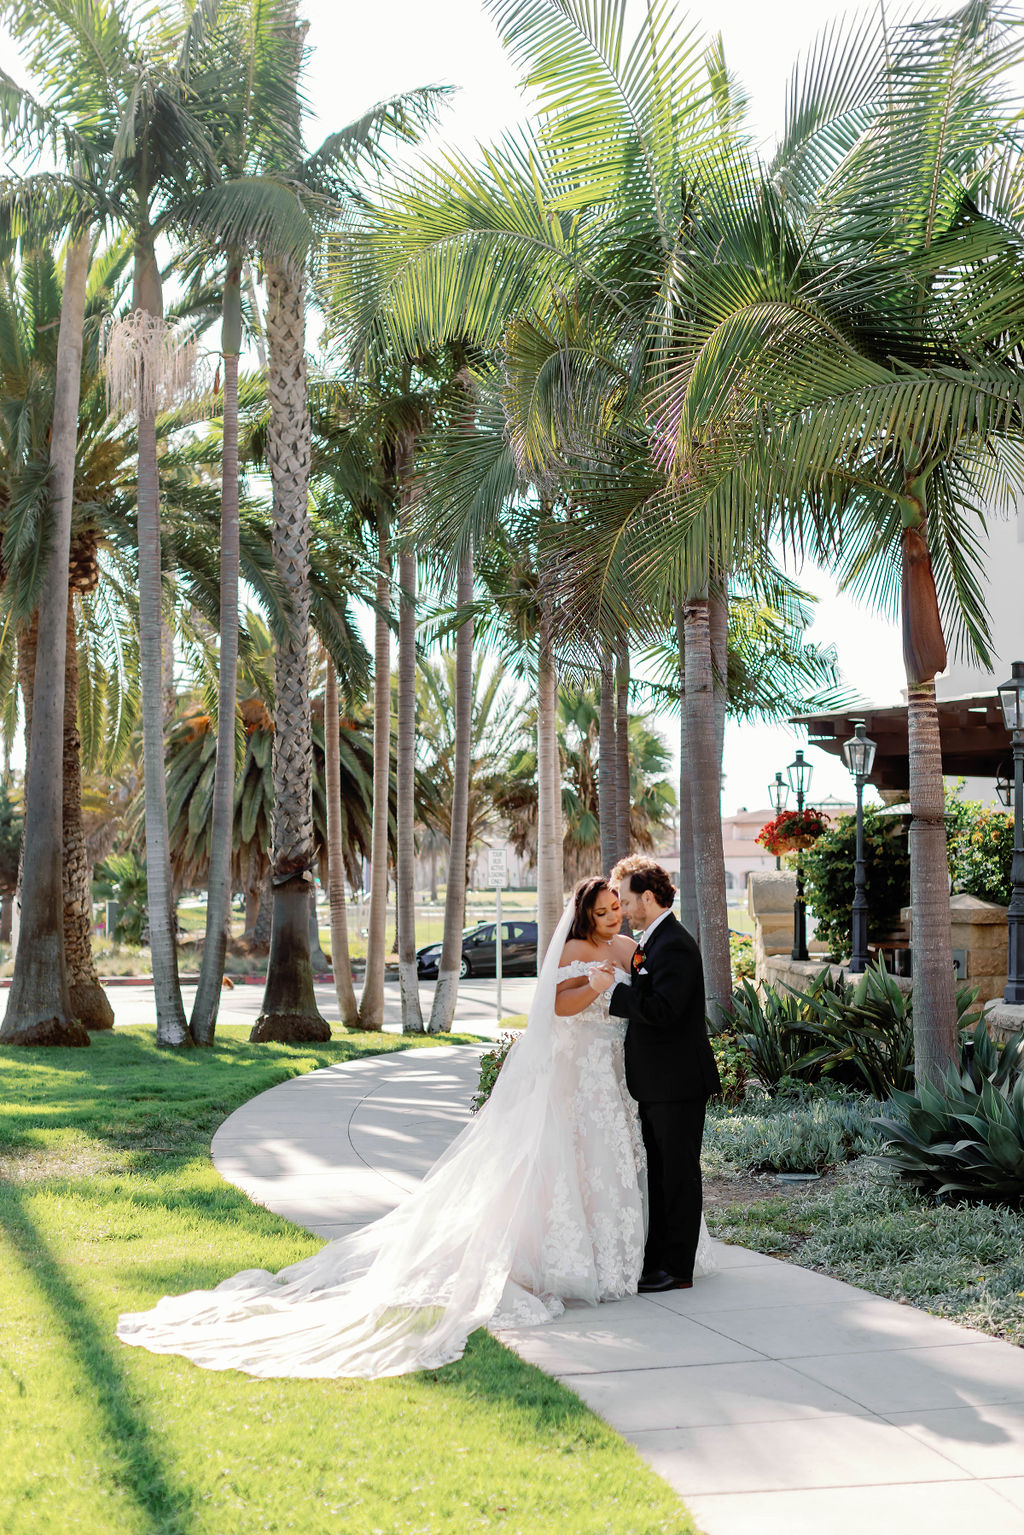 First look at Mission Santa Barbara wedding | Photo by Sarah Block Photography